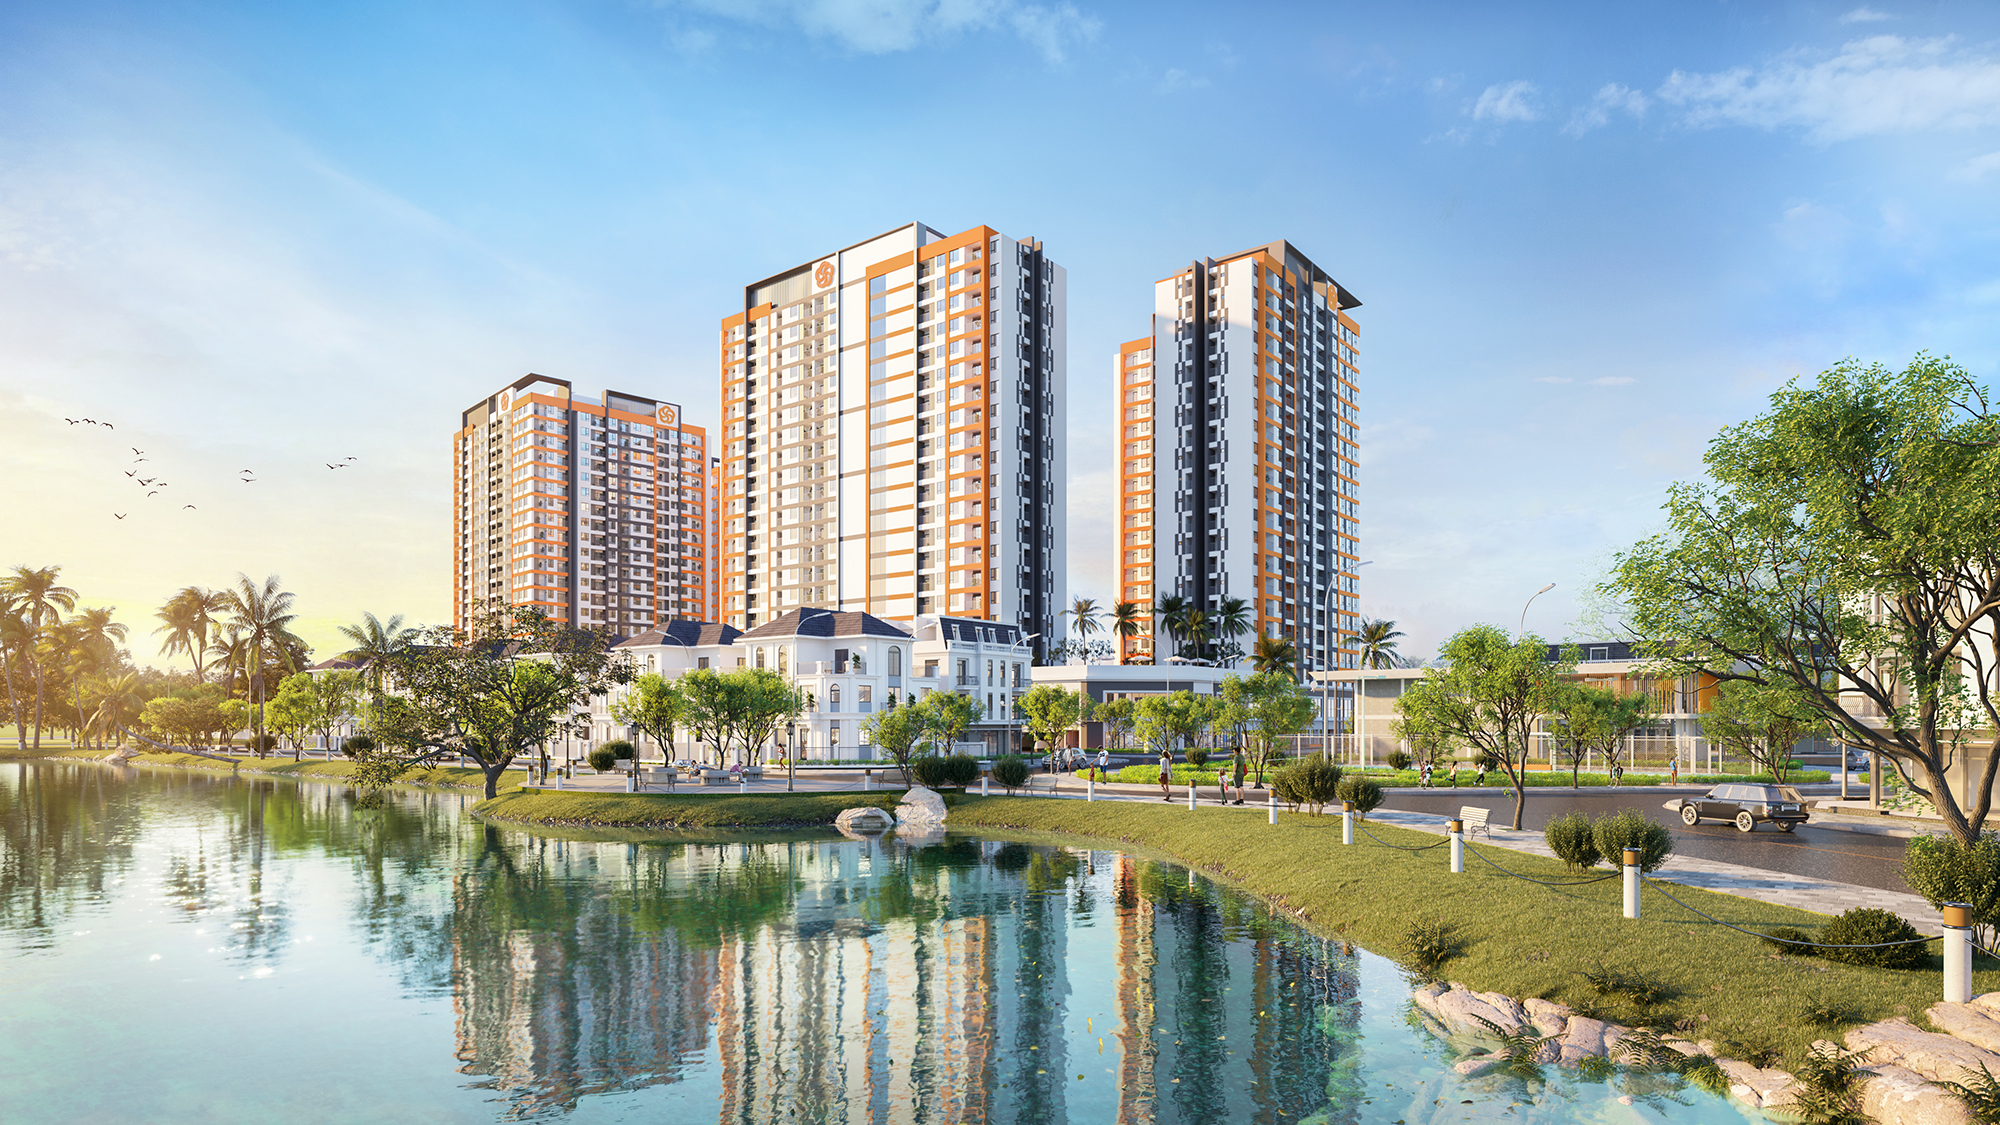  Dự án 9X Quy Nhơn – dự án mới nhất do Hưng Thịnh Land phát triển tại Quy Nhơn hướng tới khách hàng trẻ mong muốn sở hữu căn hộ đầu tiên.